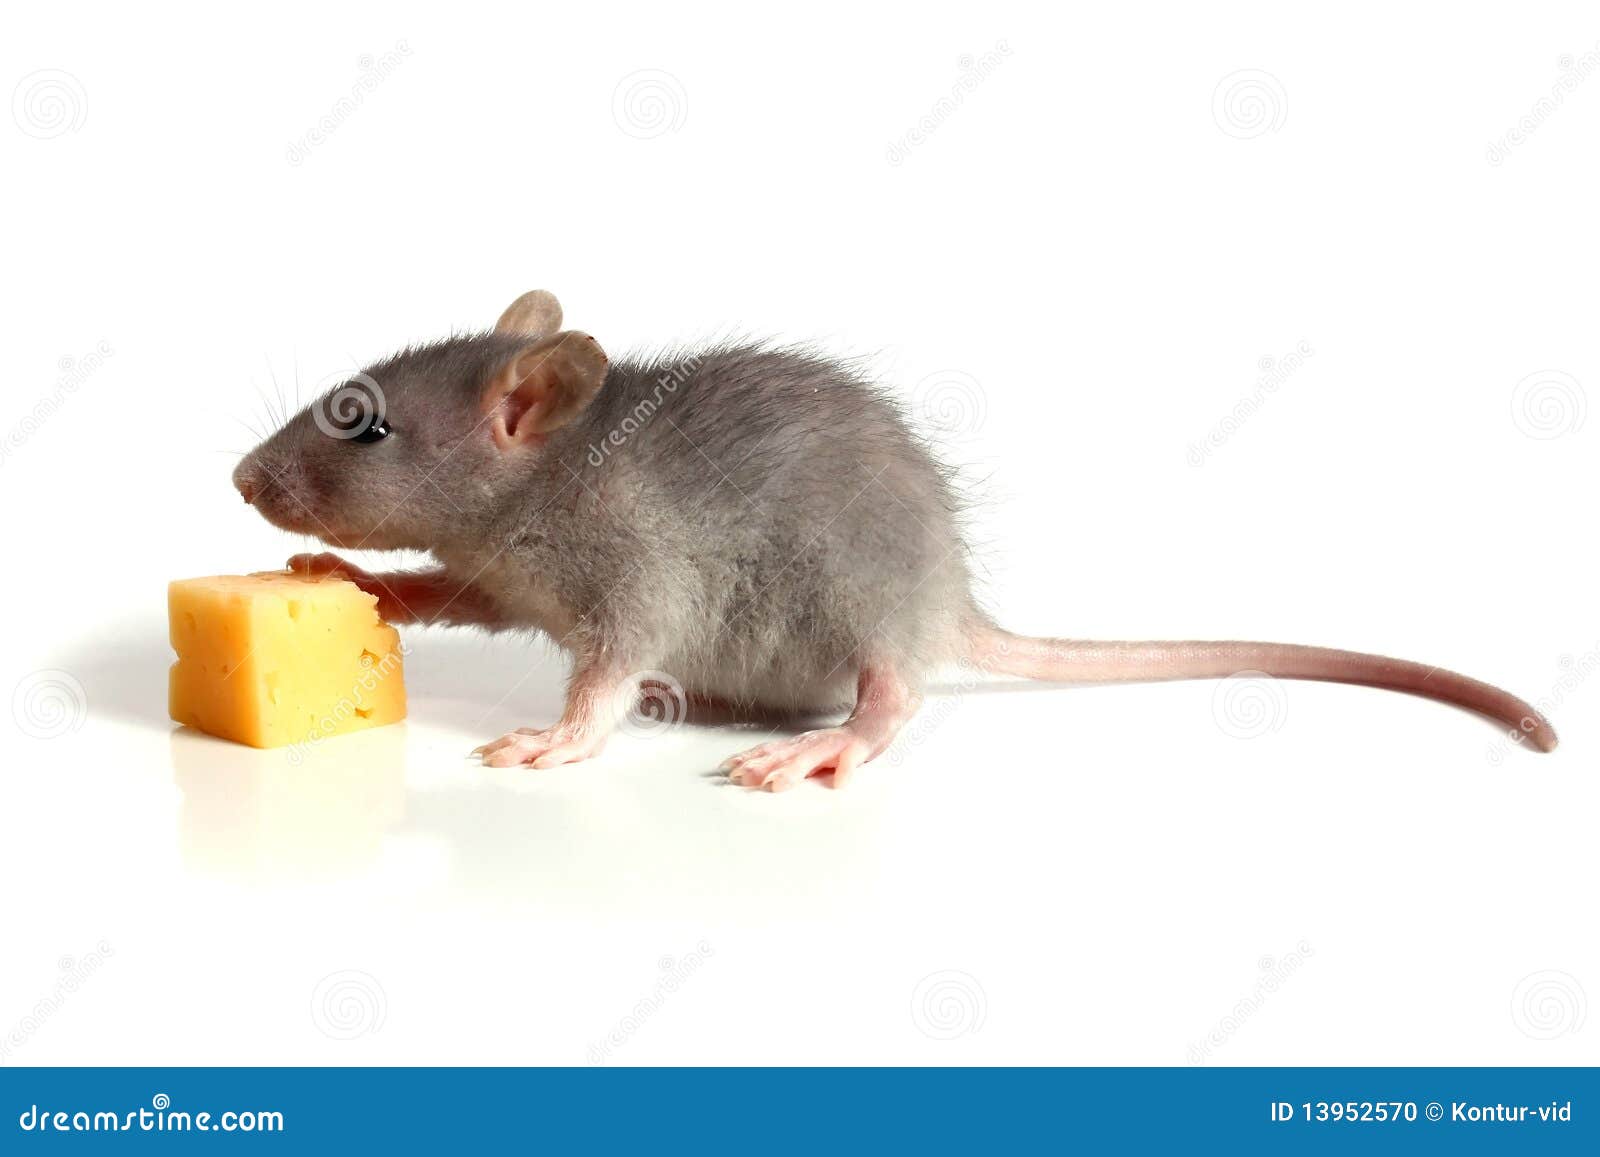 Piccoli mouse e formaggio. Piccolo mouse e formaggio isolati su priorità bassa bianca